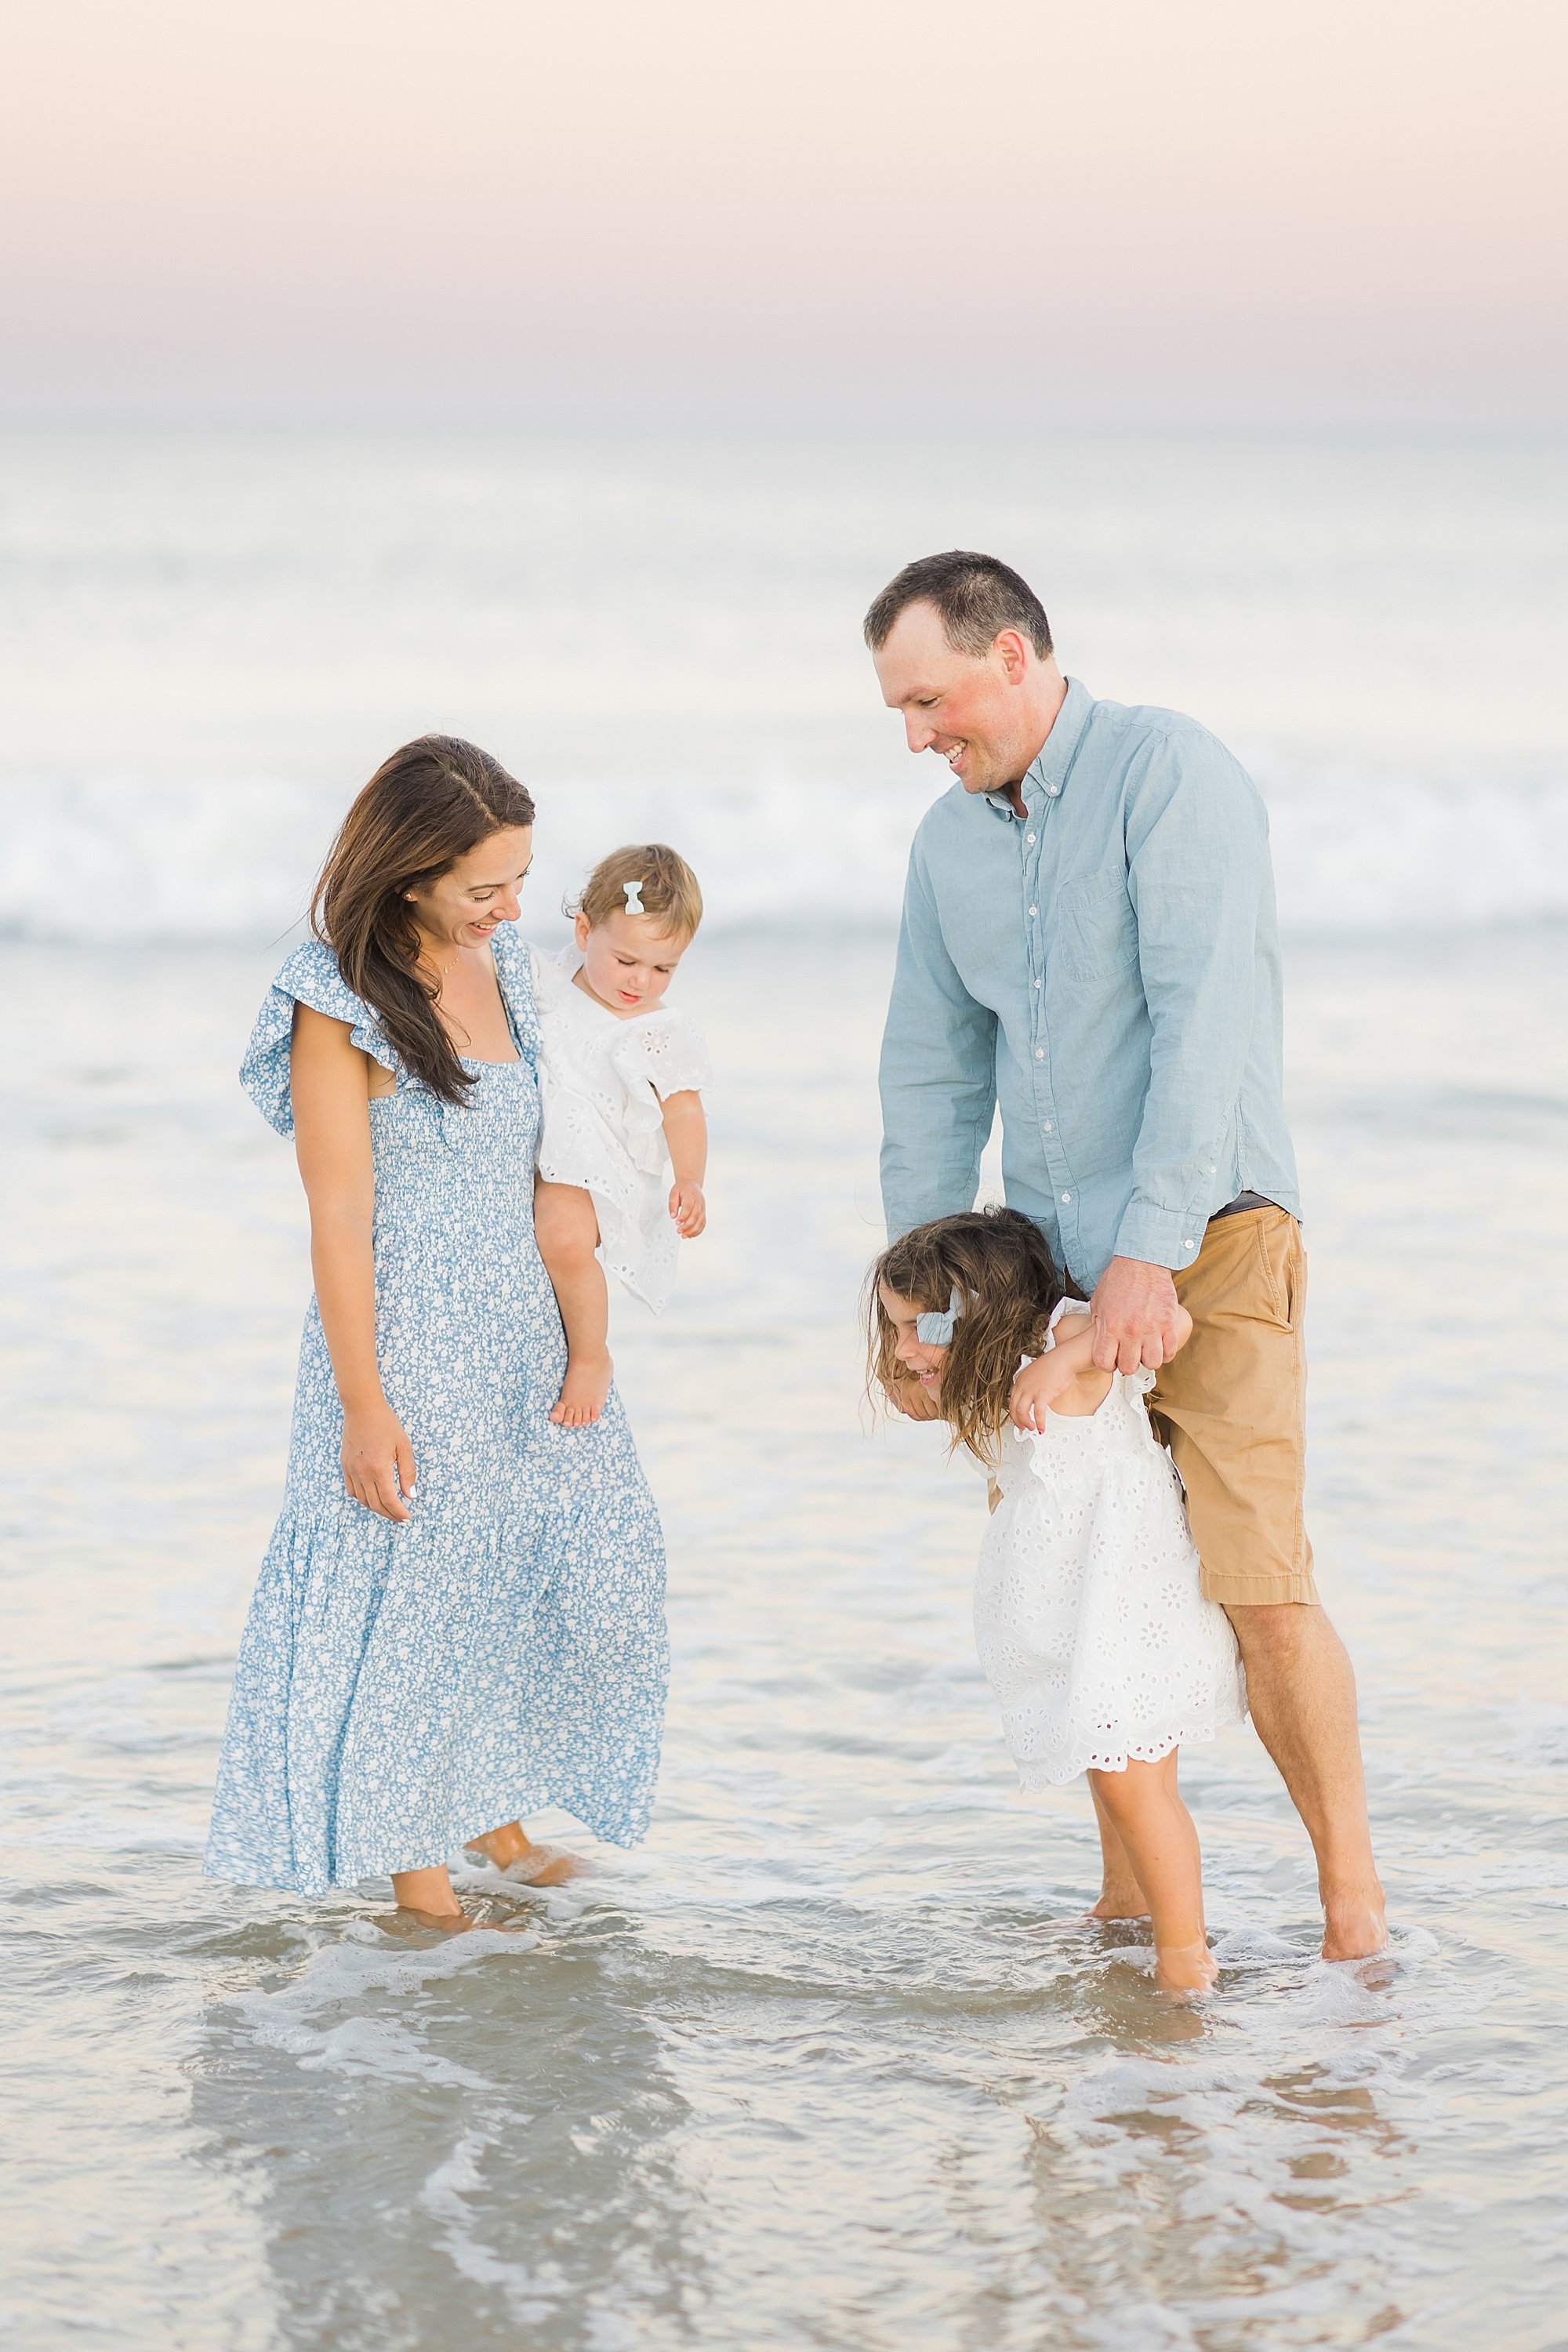 family photos on the beach in Beach Haven, NJ on Long Beach Island